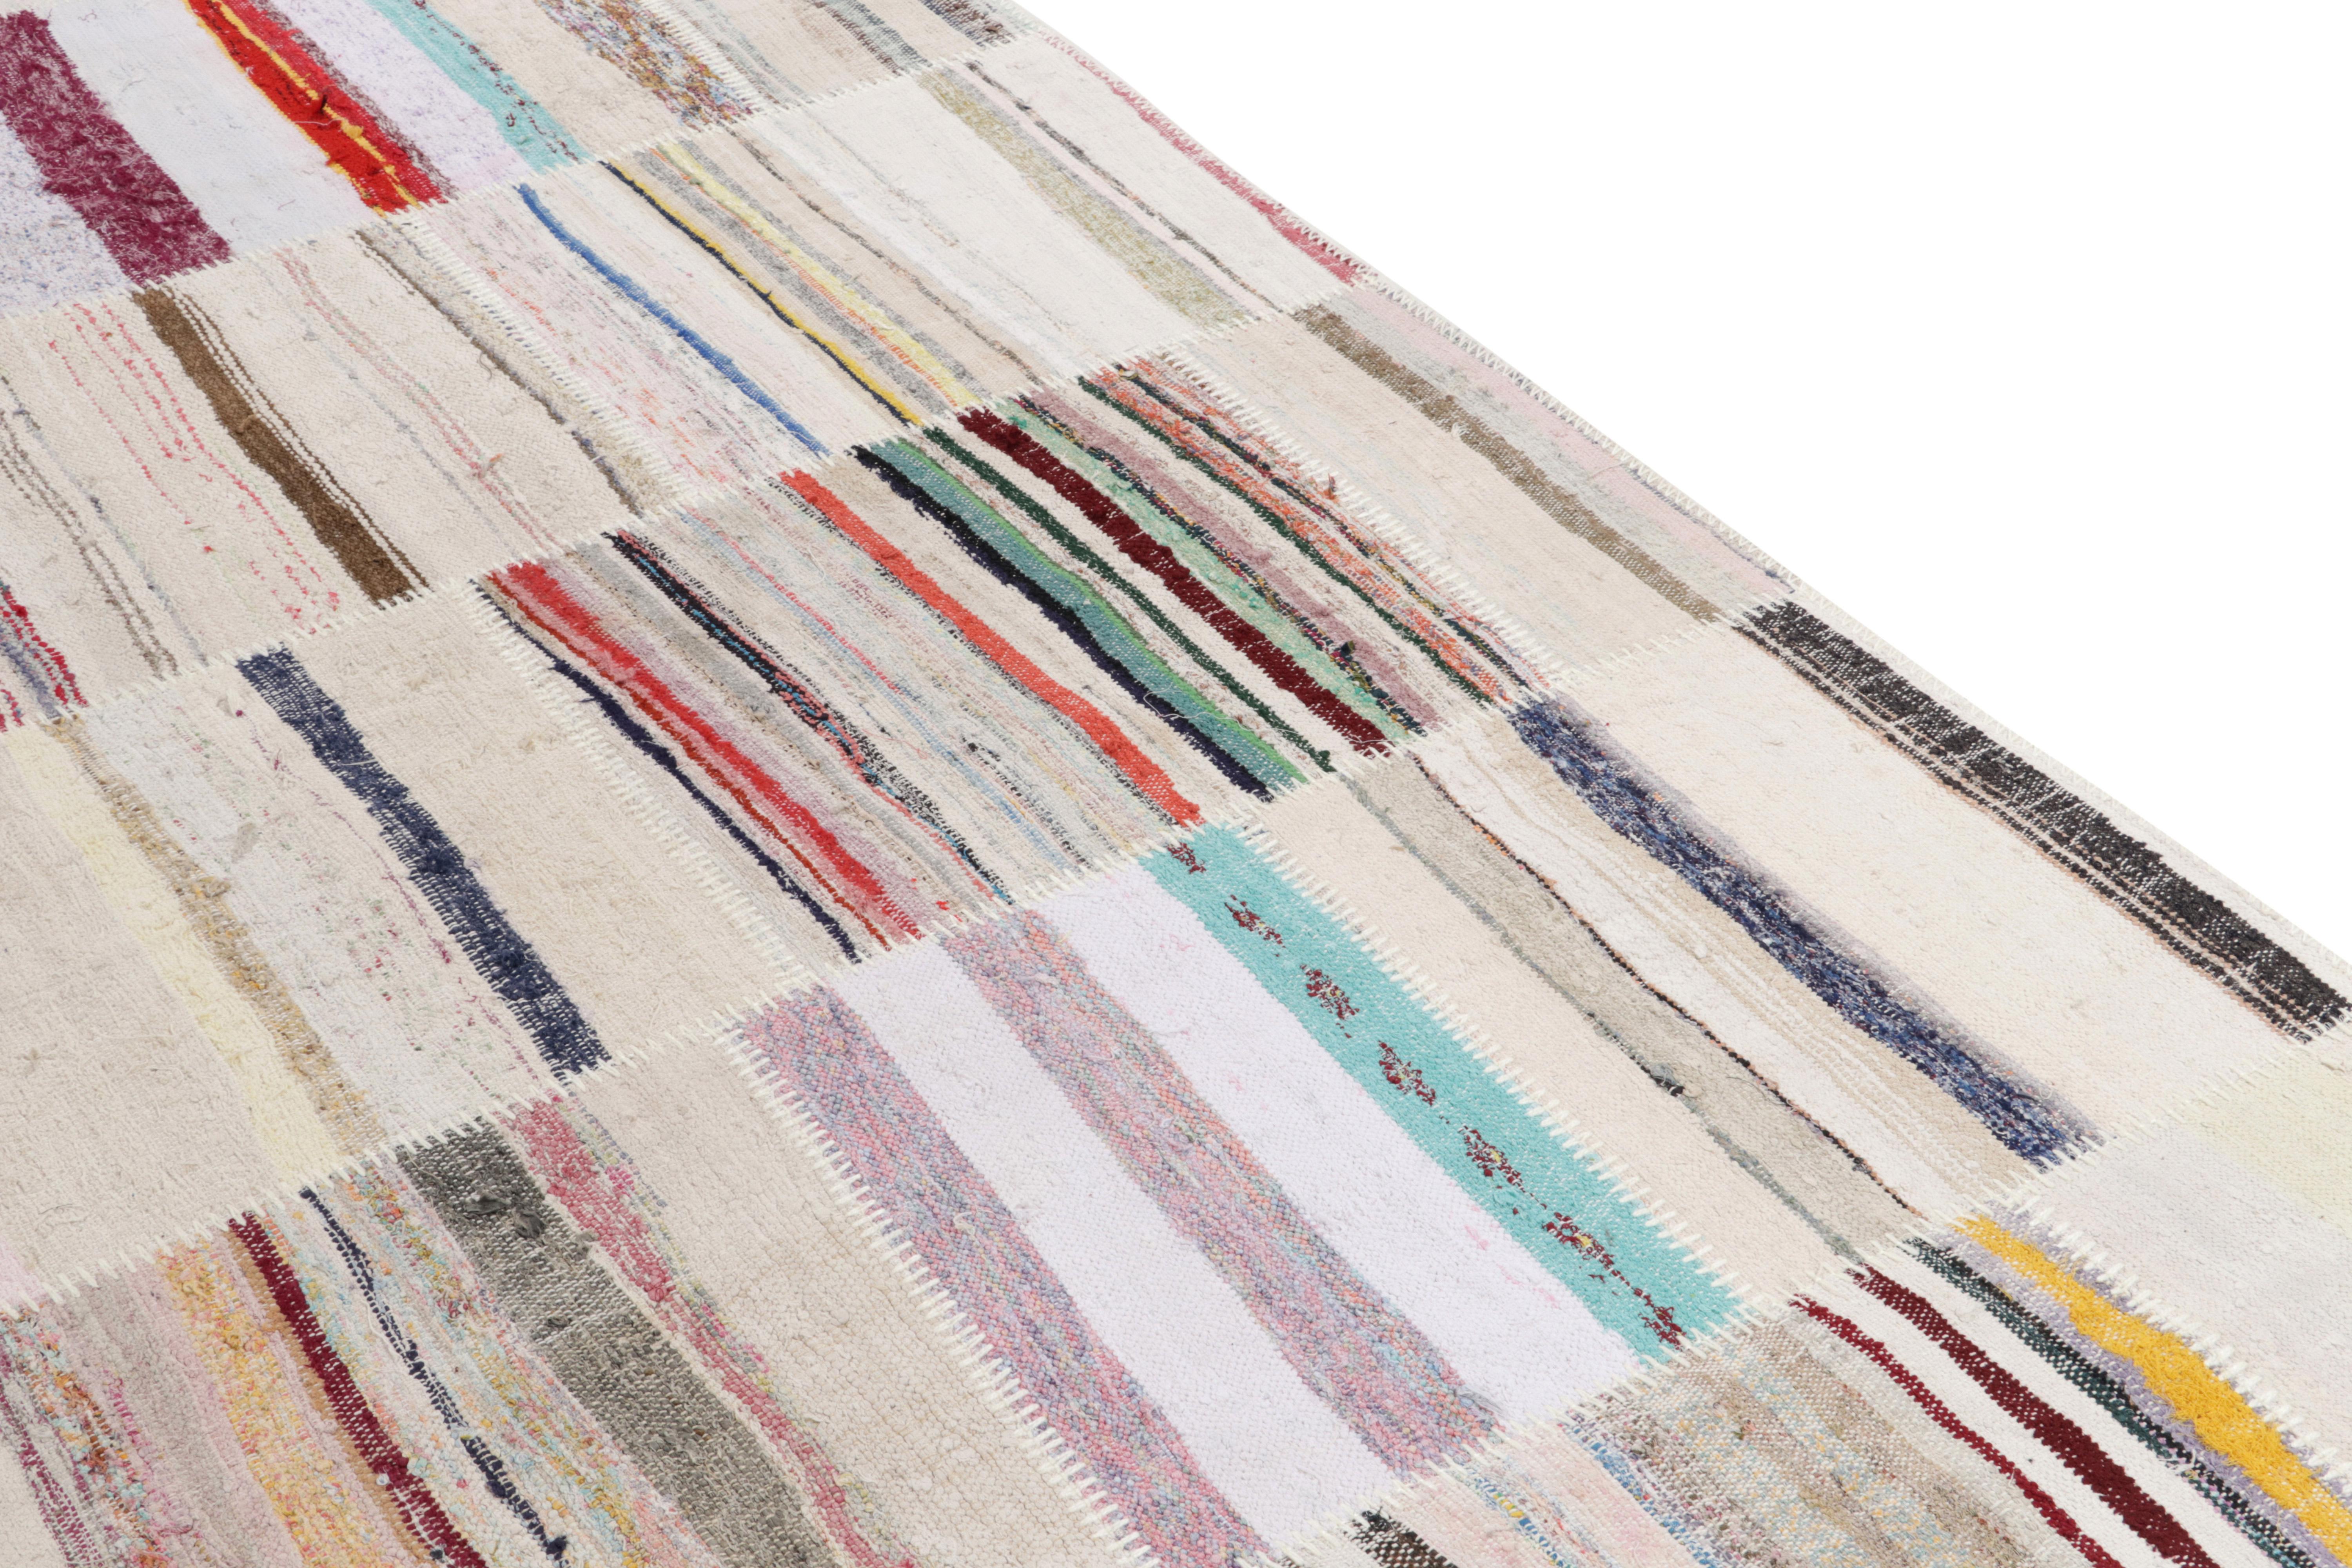 Indian Rug & Kilim's Handwoven Modern Patchwork Kilim Rug in Multicolor Striation For Sale